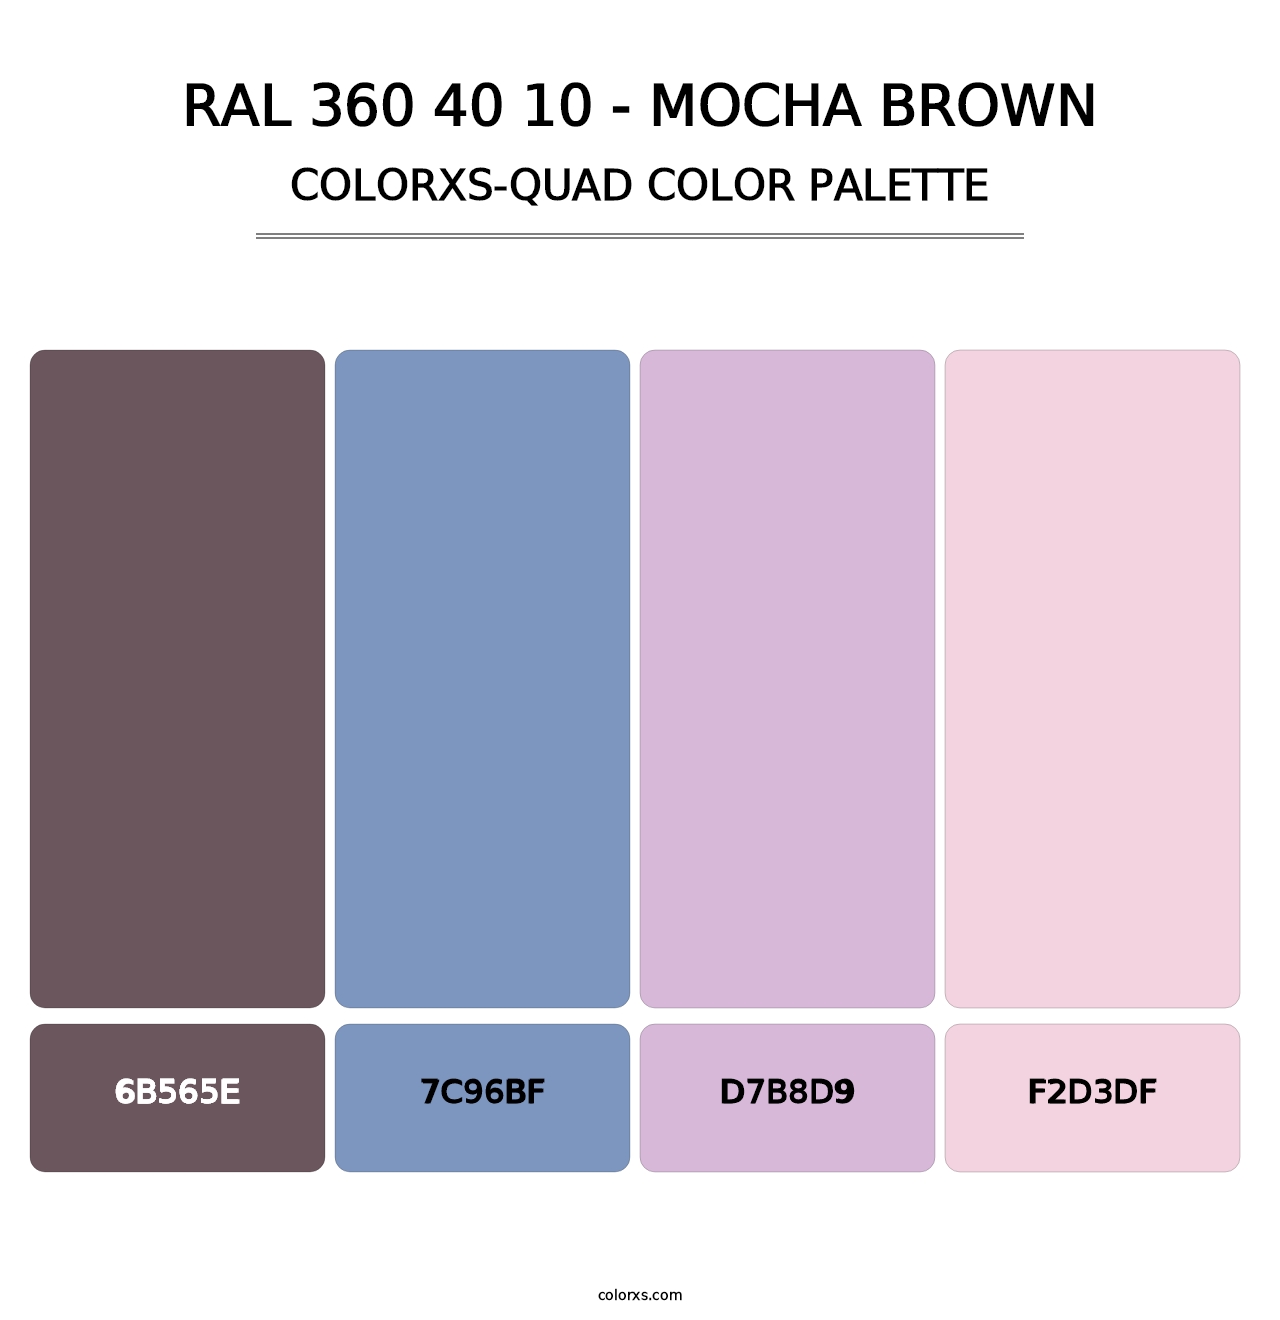 RAL 360 40 10 - Mocha Brown - Colorxs Quad Palette